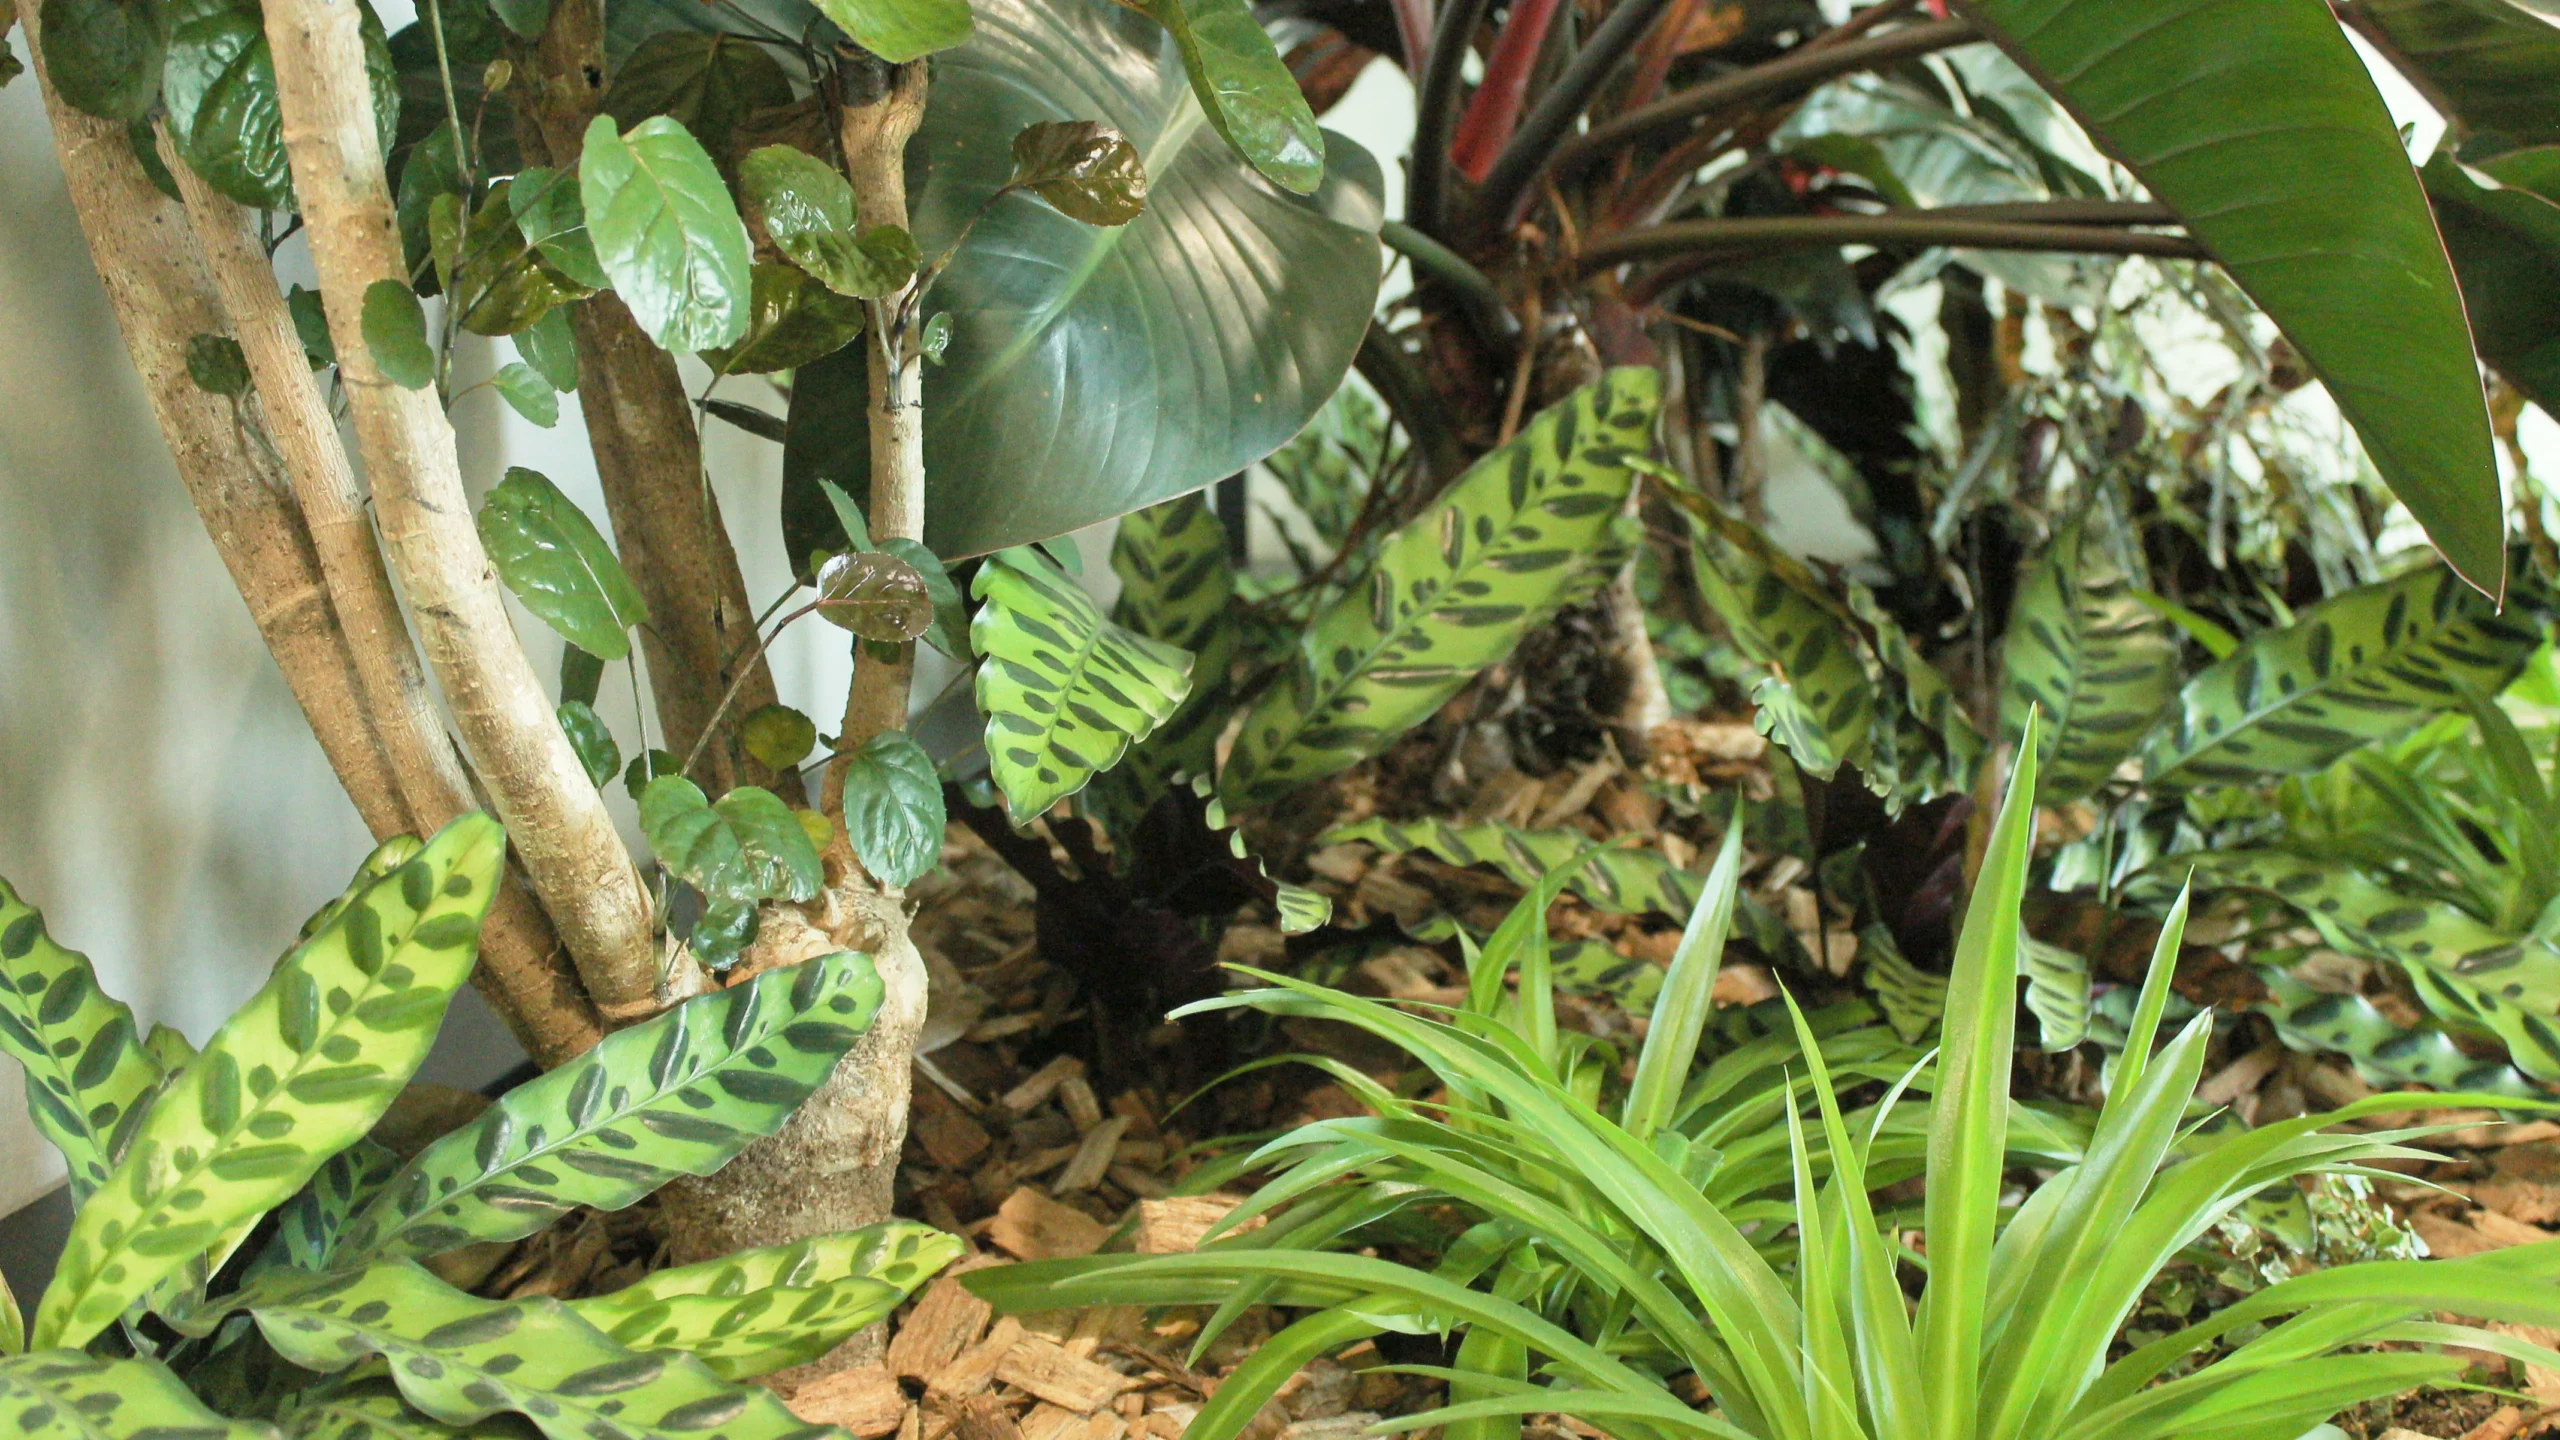 Exemple de jardin d'intérieur au sein d'une entreprise : plusieurs plantes vertes naturelles composent une harmonie de verdure